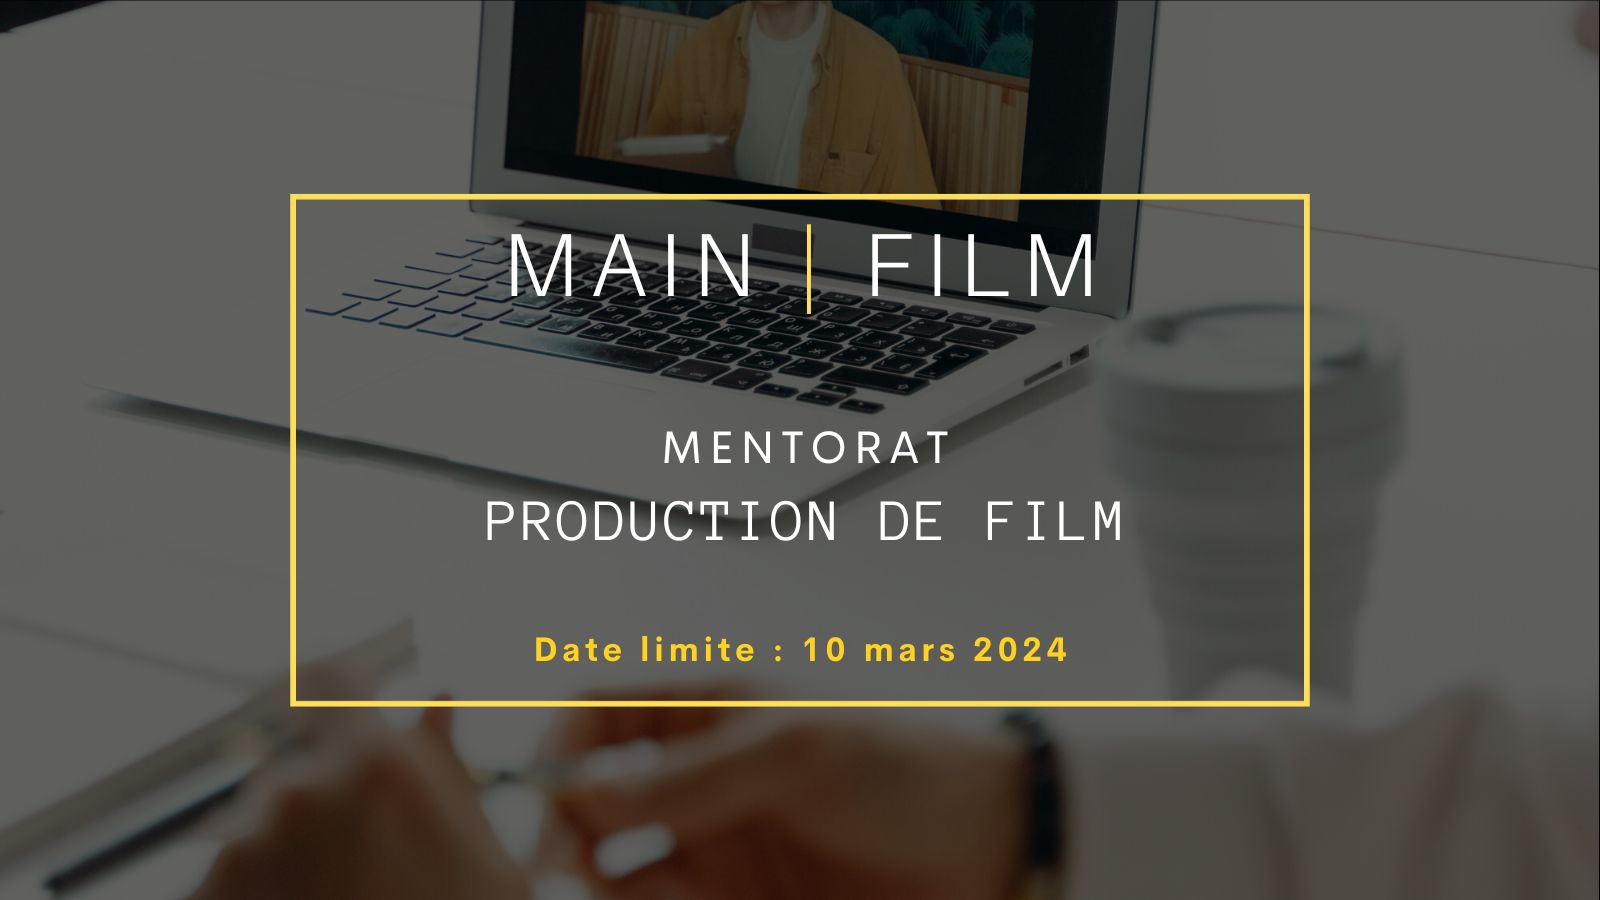 Inscription mentorat : Production de film | En ligne